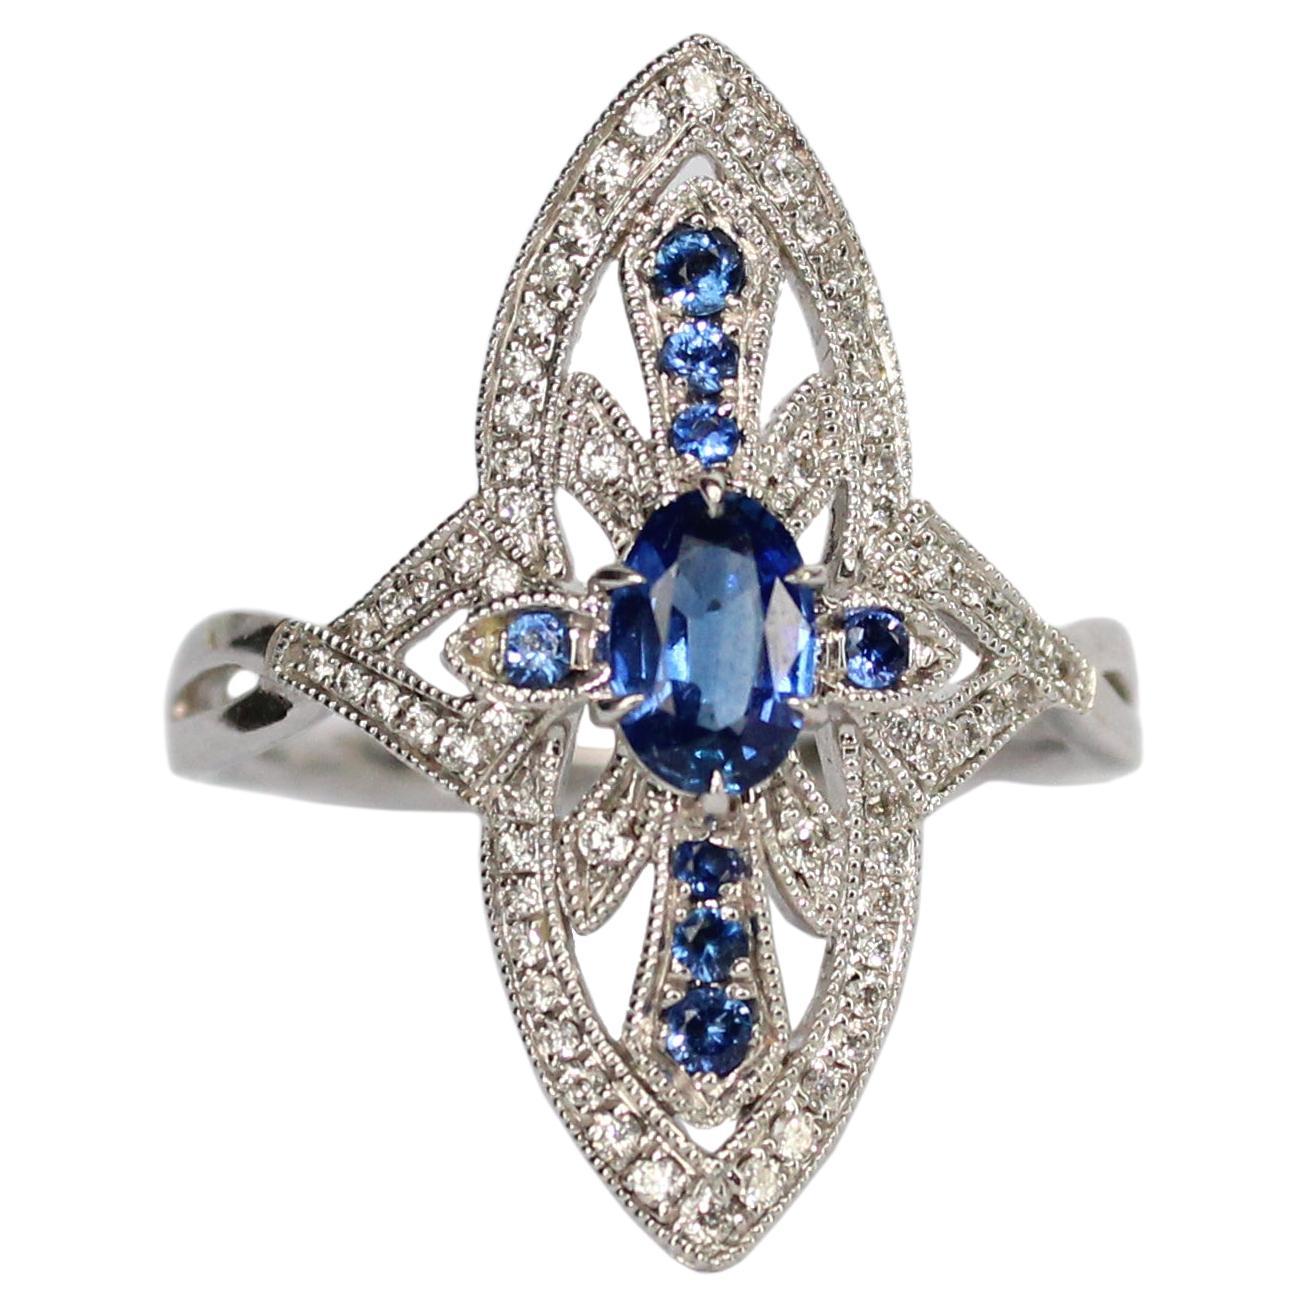 Tess Van Ghert 18K White Gold Art Deco Inspired Sapphire and Diamond Ring 